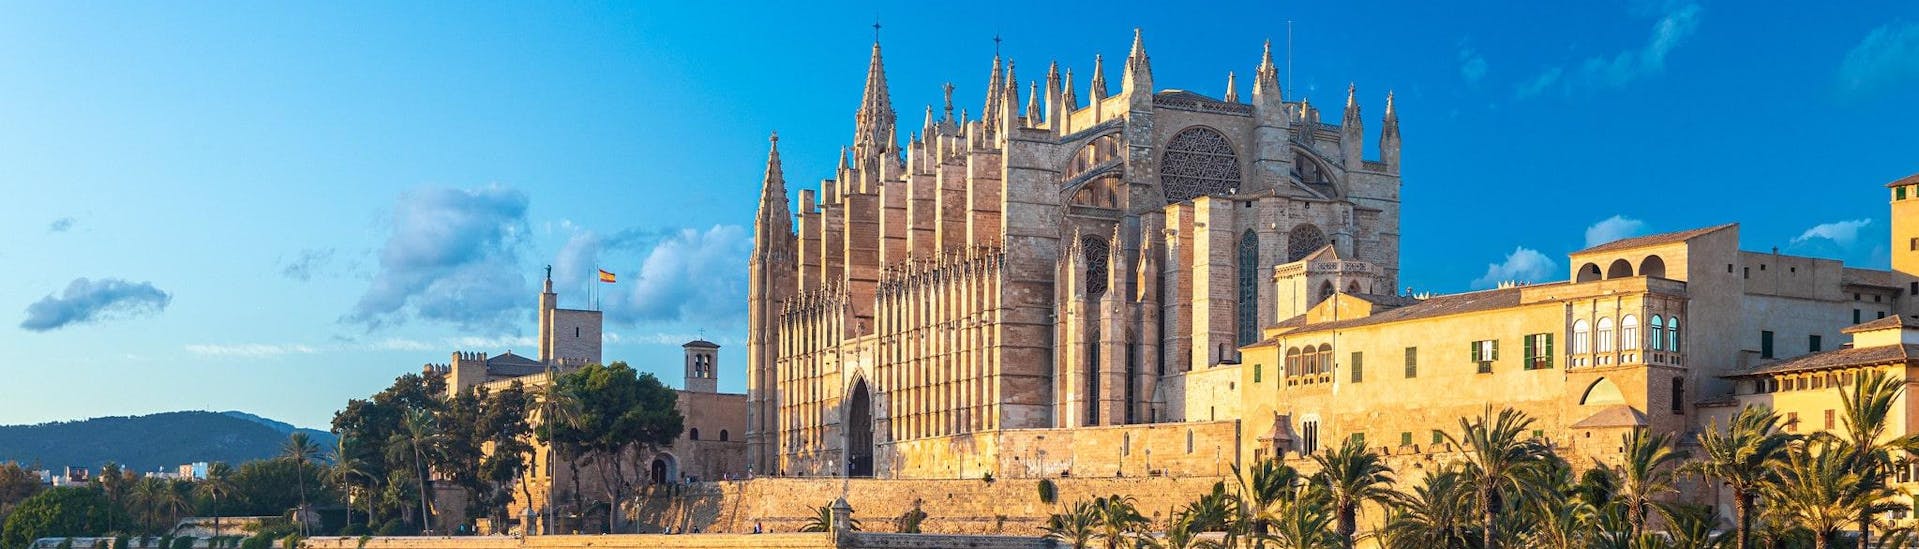 Blick auf die Kathedrale bei einer Fahrt mit einem Jetski in Palma de Mallorca.